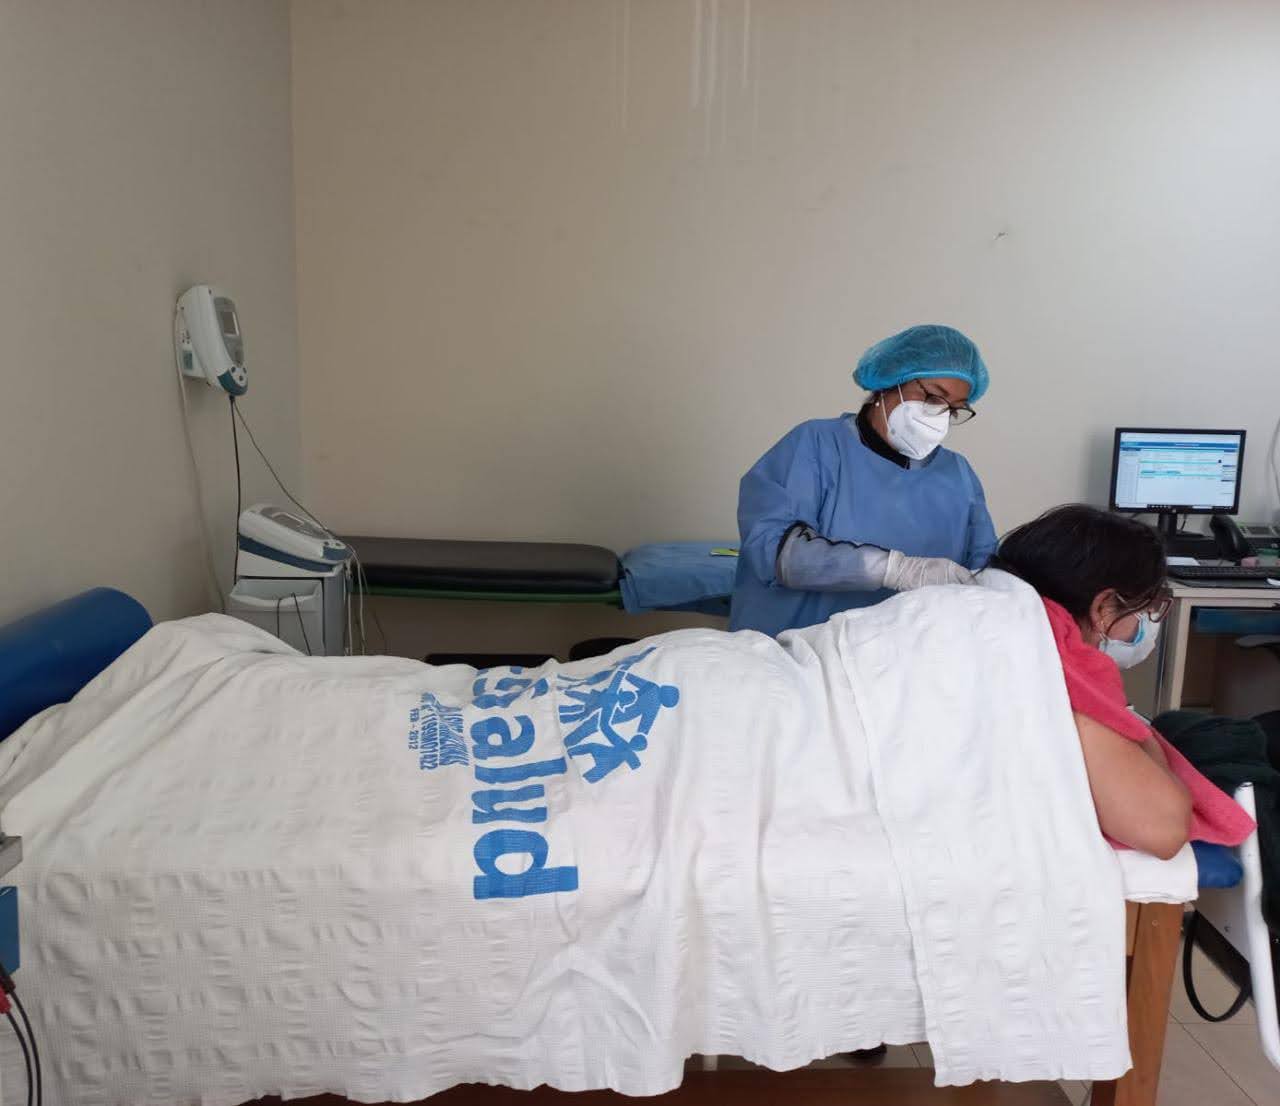 Essalud - Hospital Higos Urco de EsSalud Amazonas reinicia atención presencial en medicina física y rehabilitación